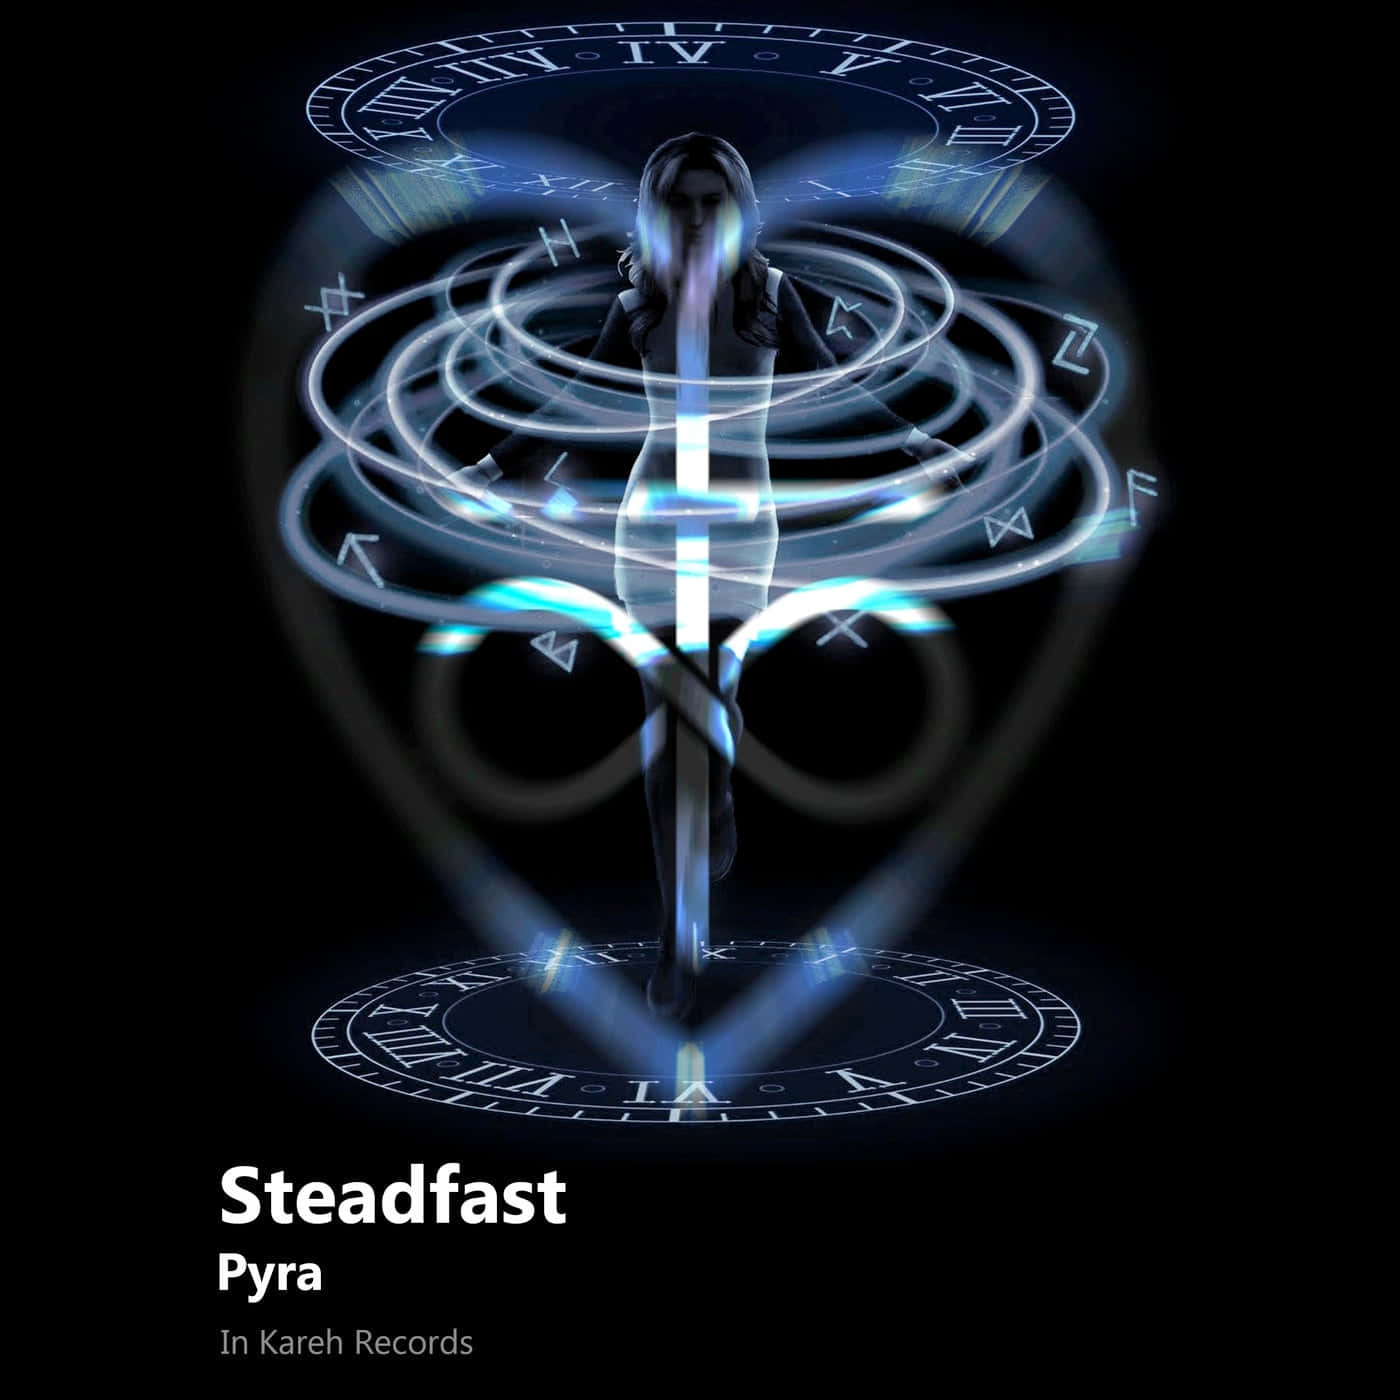 Mystical Steadfast Pyra Album Art Wallpaper